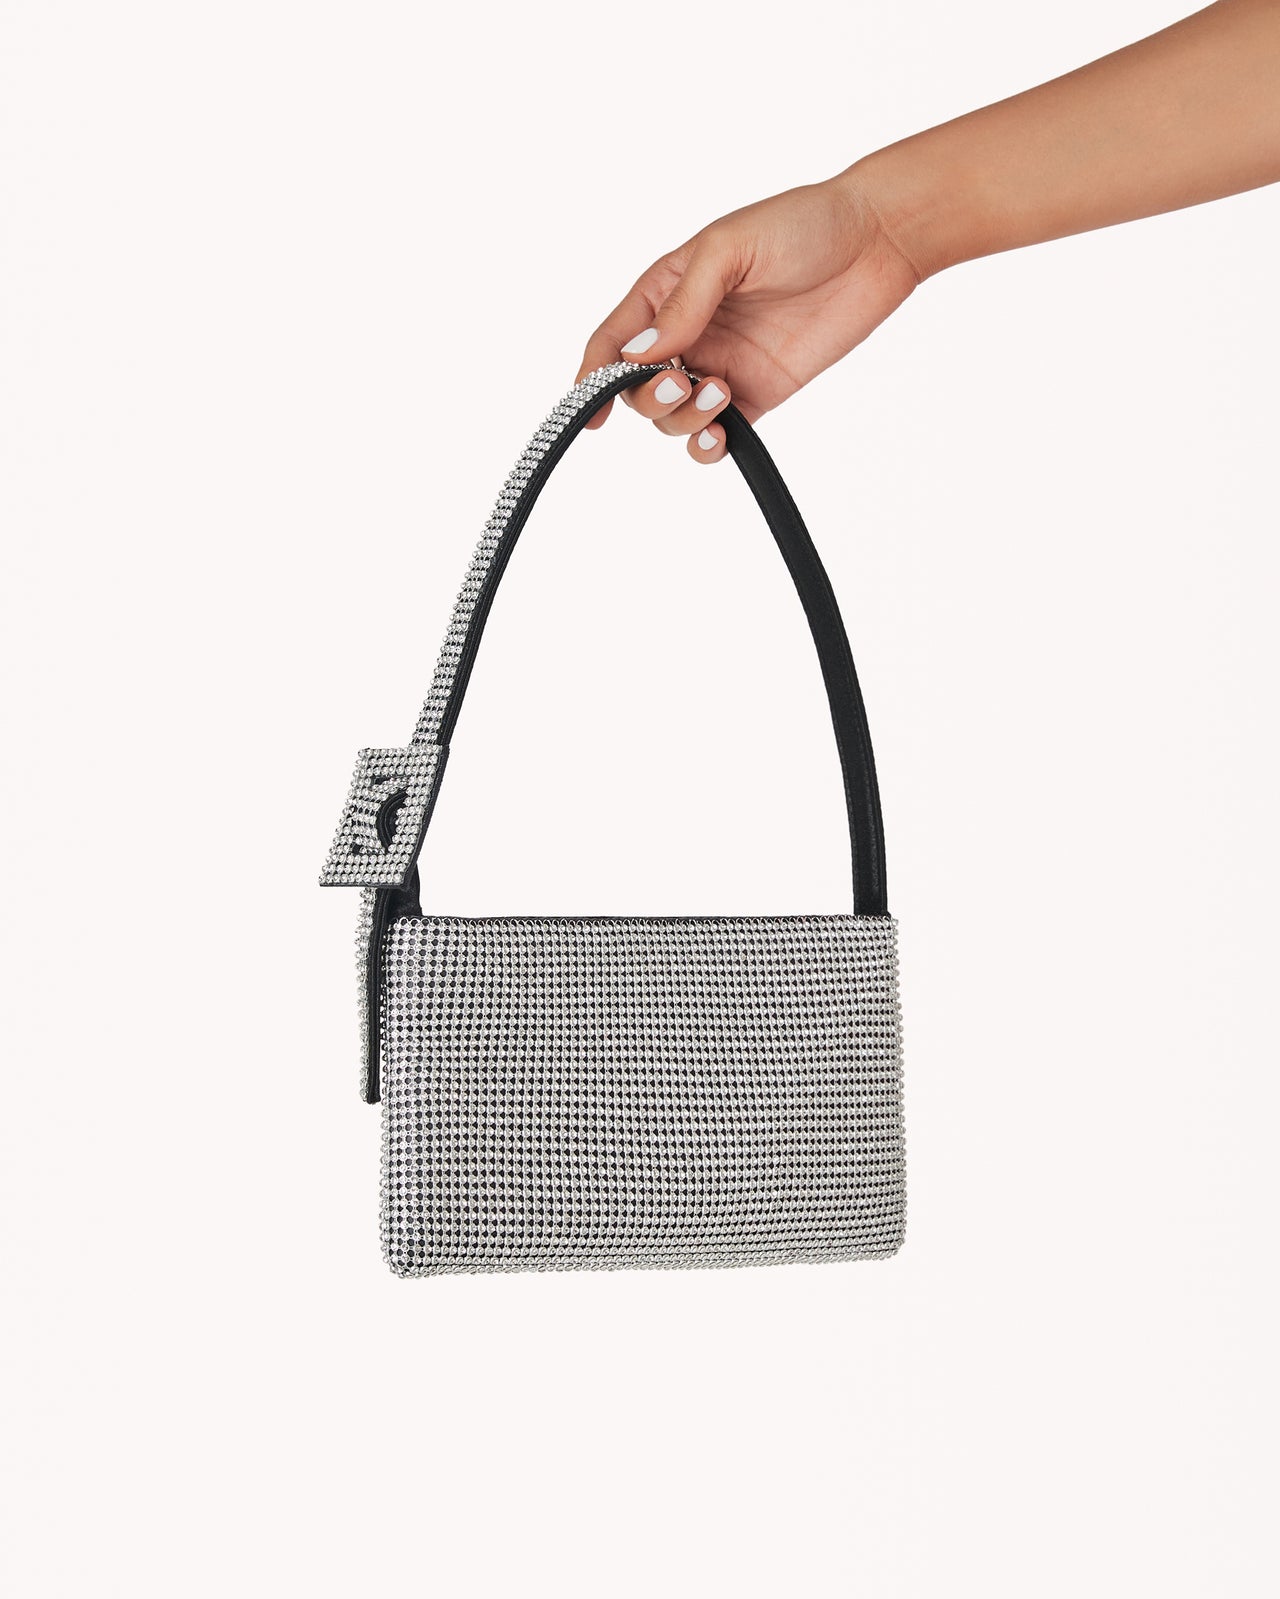 Kiz Shoulder Bag, Evening Bag by Billini | LIT Boutique